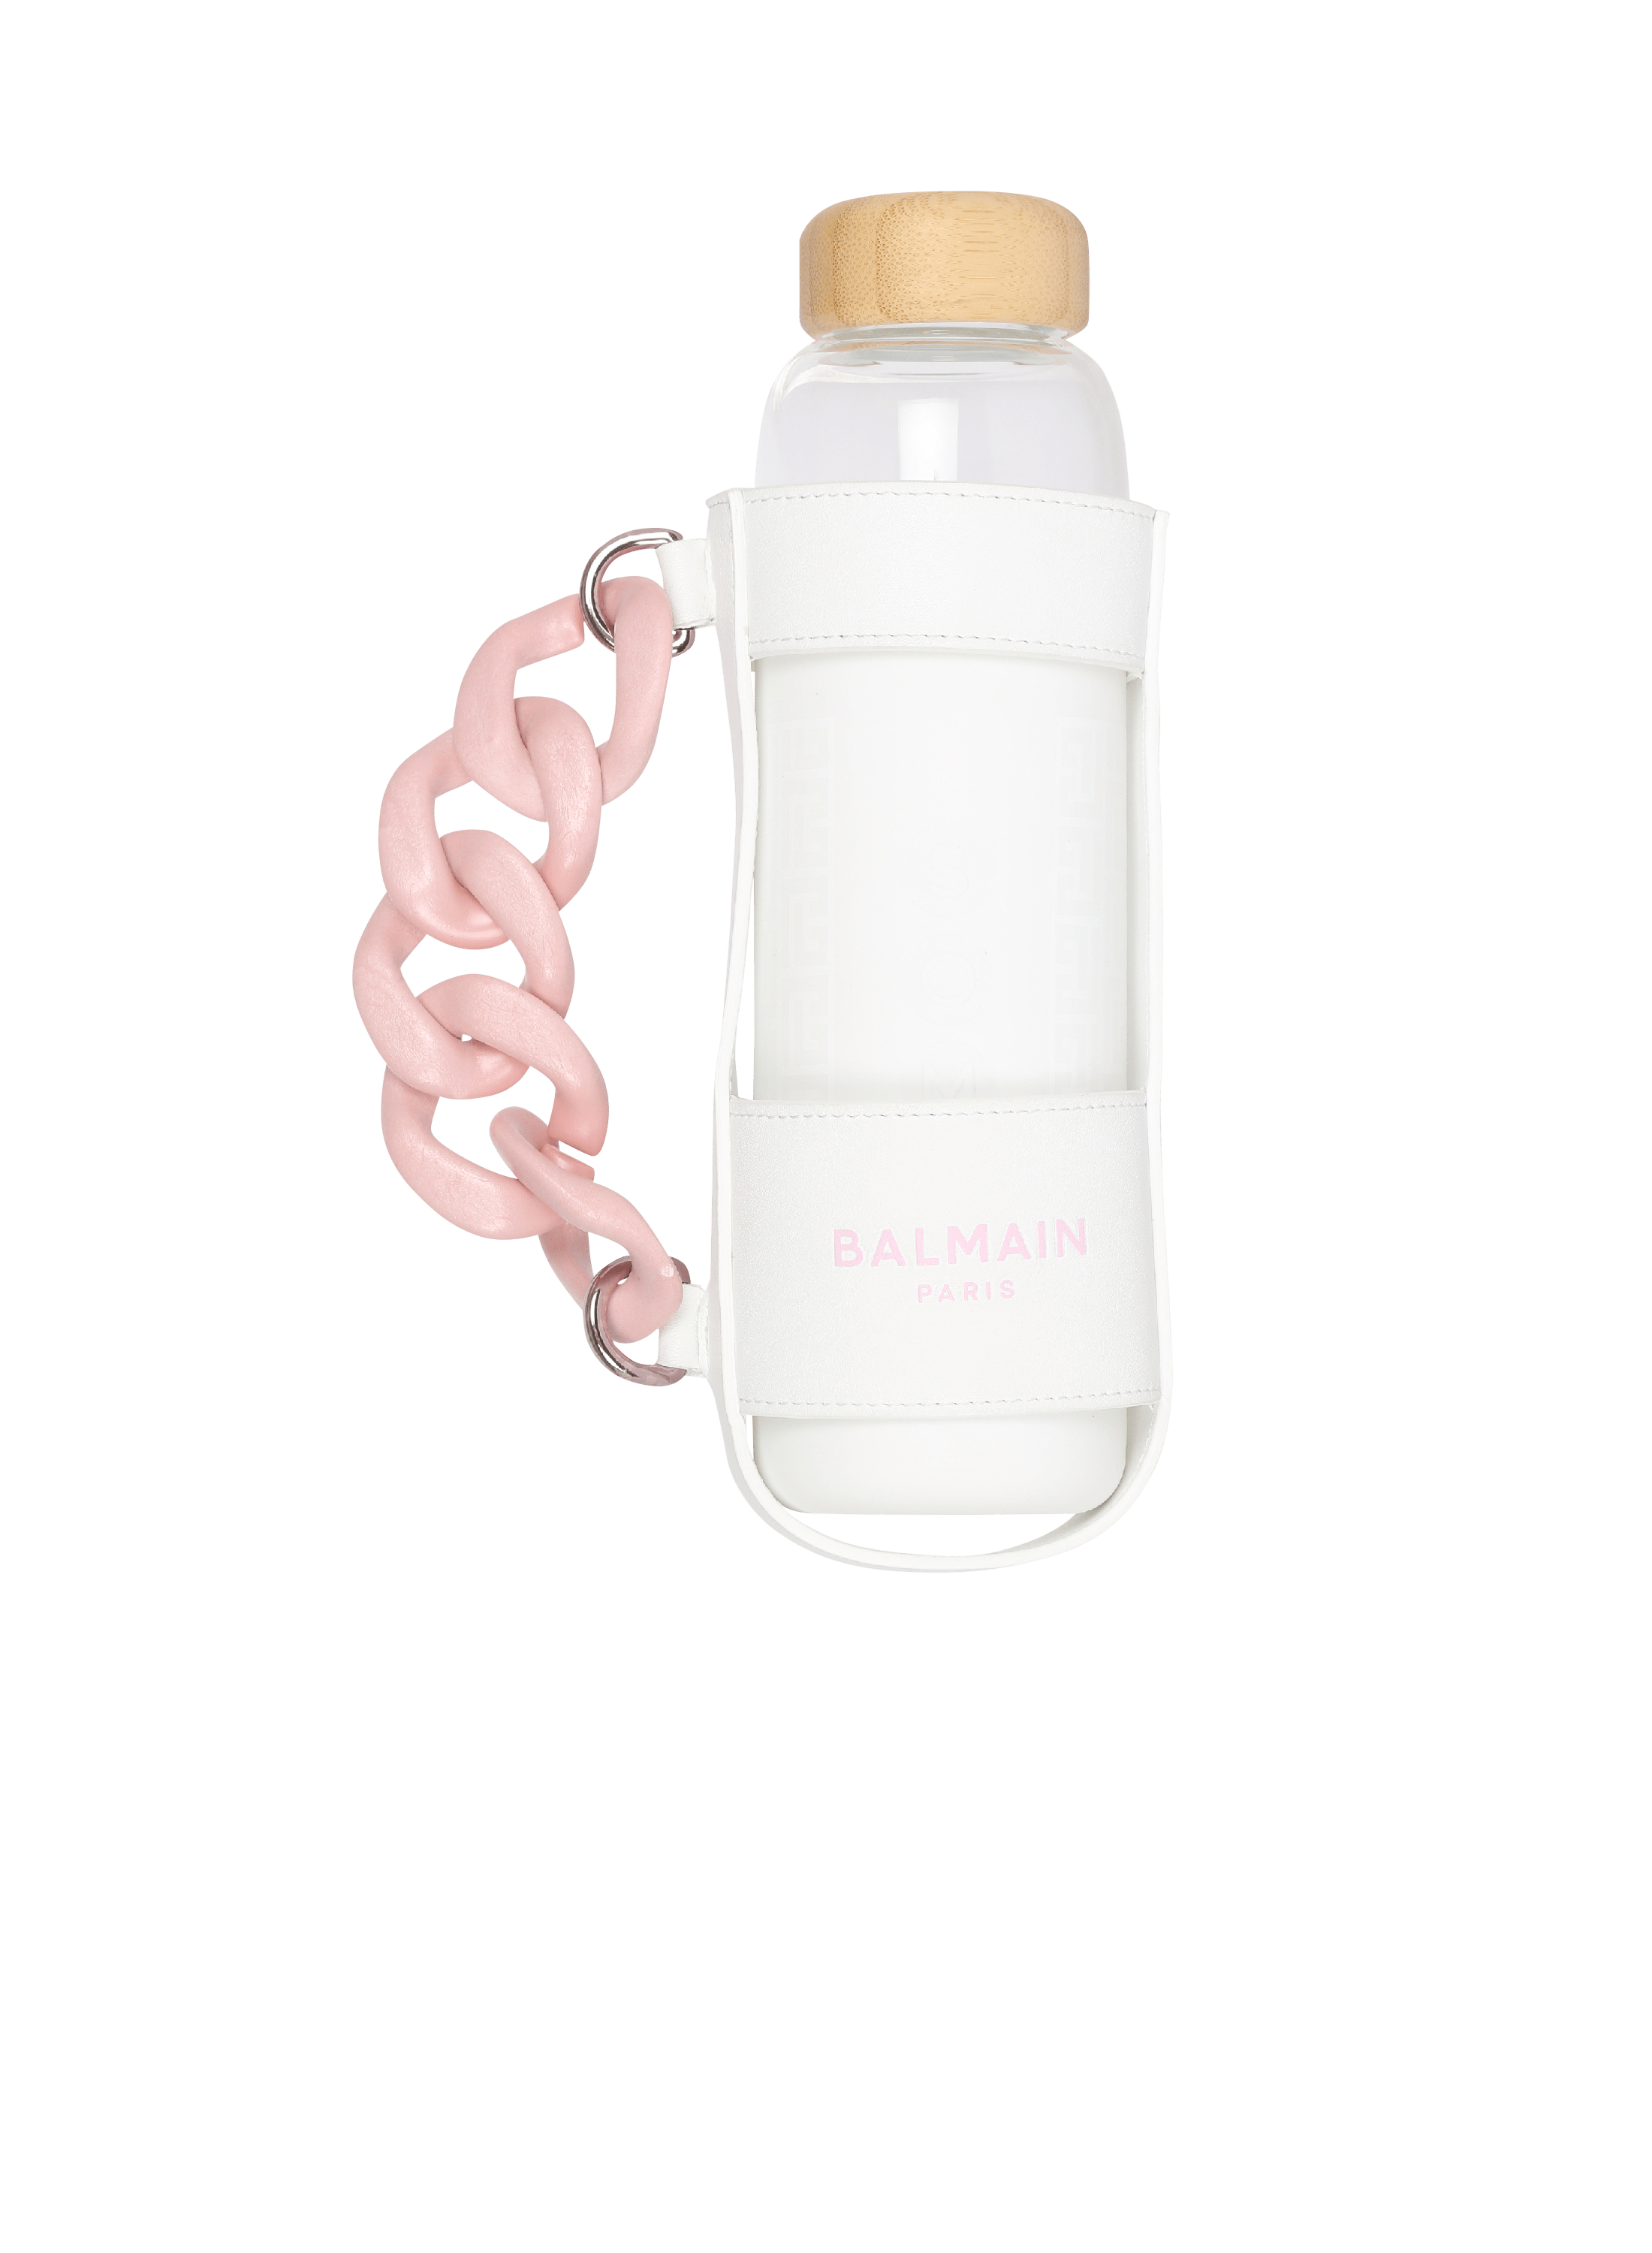 Balmain x Evian - Bottle holder